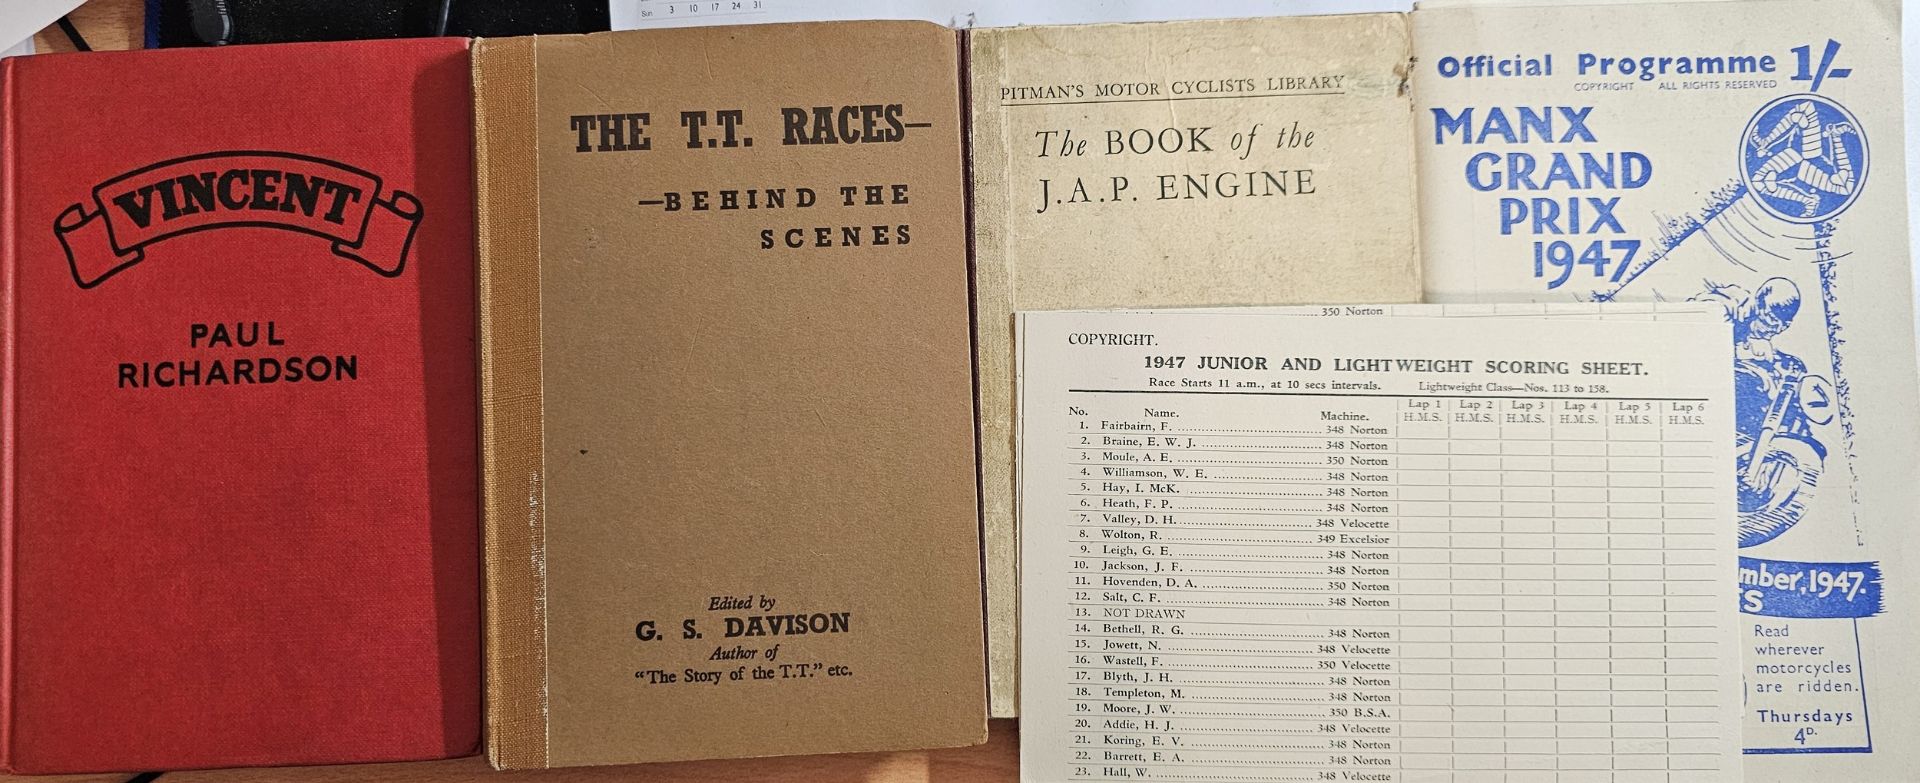 Vincent by Paul Richardson, The TT Races by Davison, Pitmans J.A.P. engine and Manx GP 1947